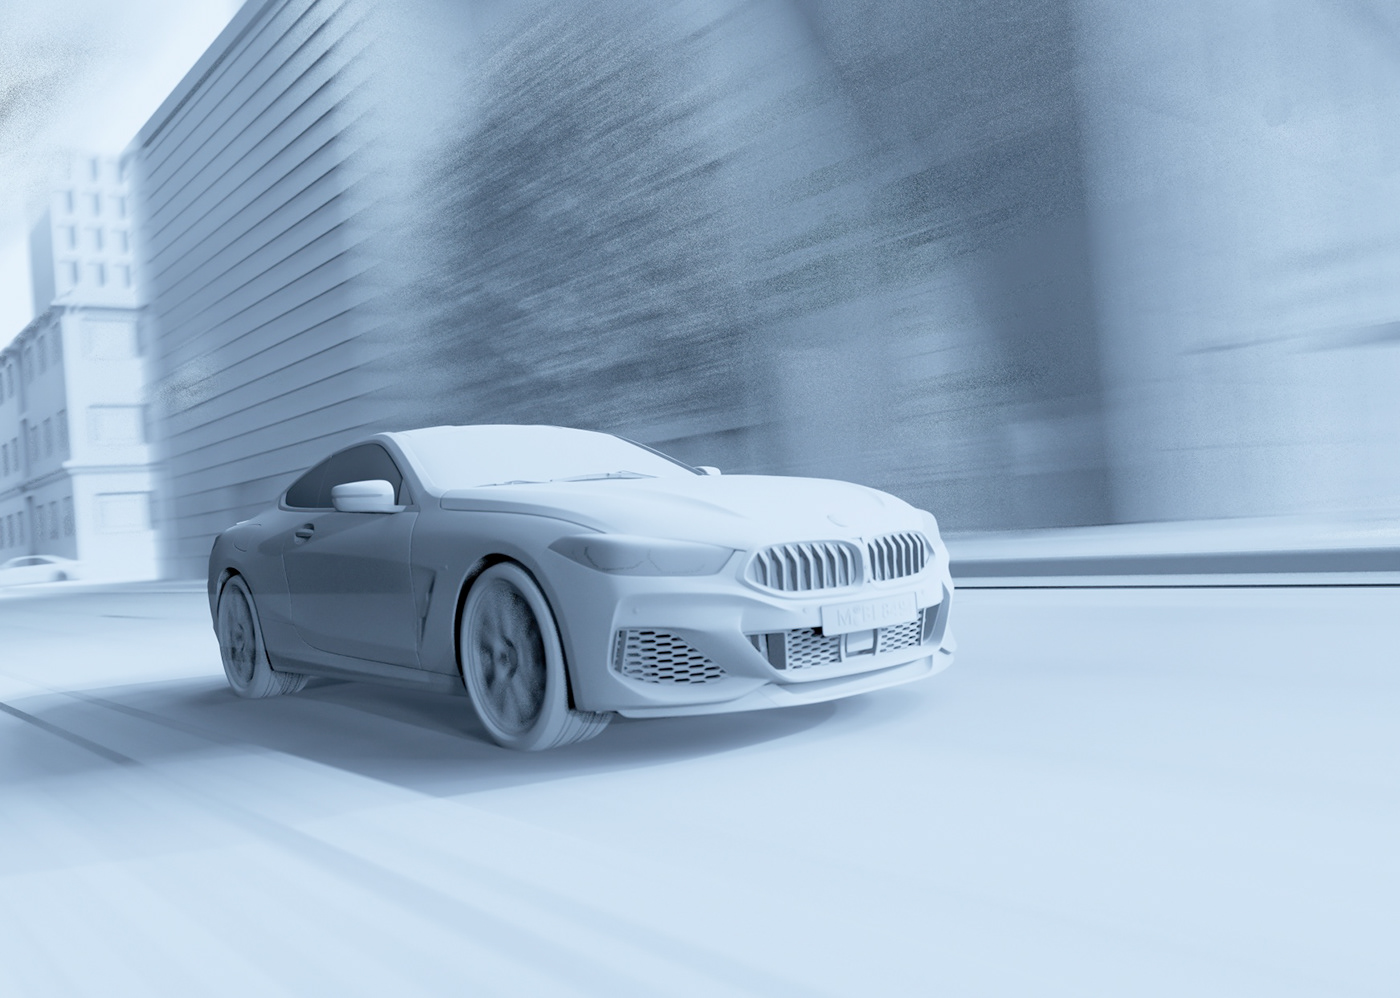 850i BMW car CGI